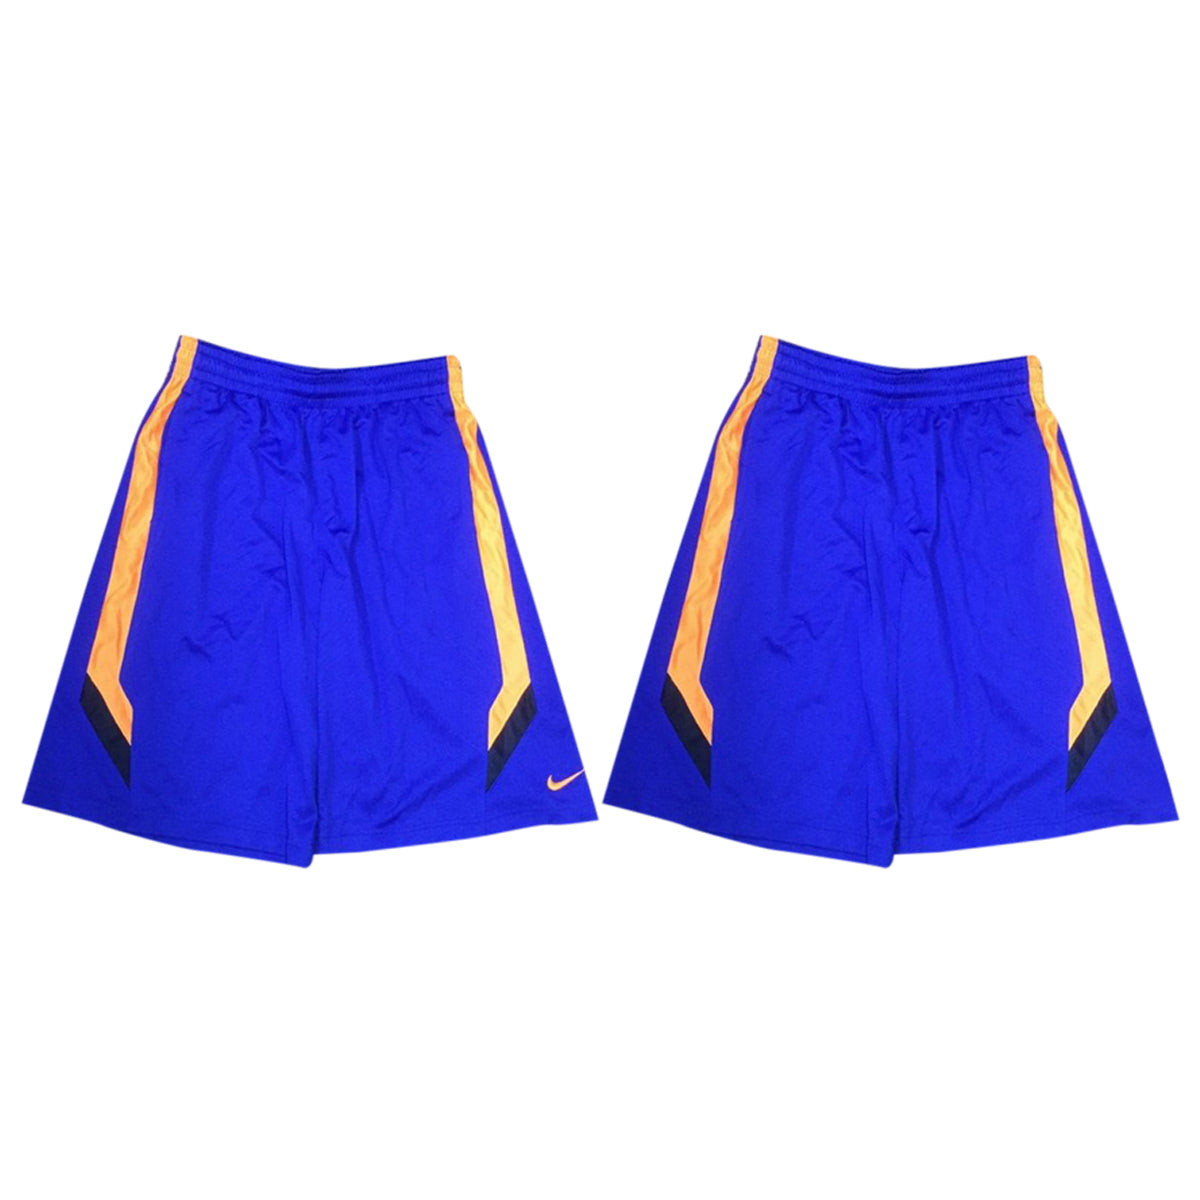 Nike Dri-fit Shorts Mens Style : 532346-489